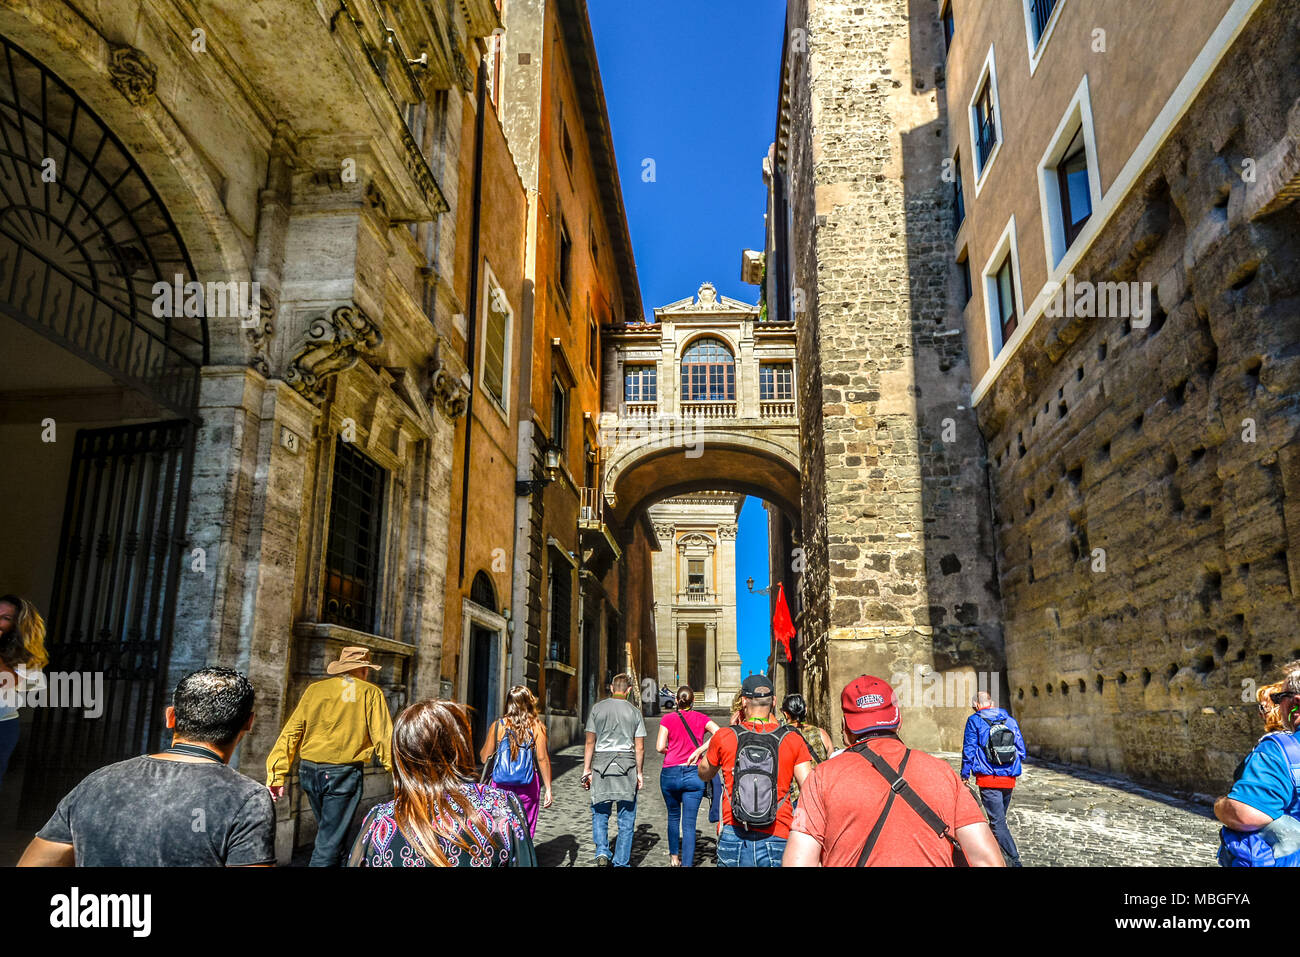 Una guida turistica è a capo di un gruppo di turisti attraverso il colle Capitolino e il Portico dii Consentes vicino al Foro Romano a Roma Italia Foto Stock